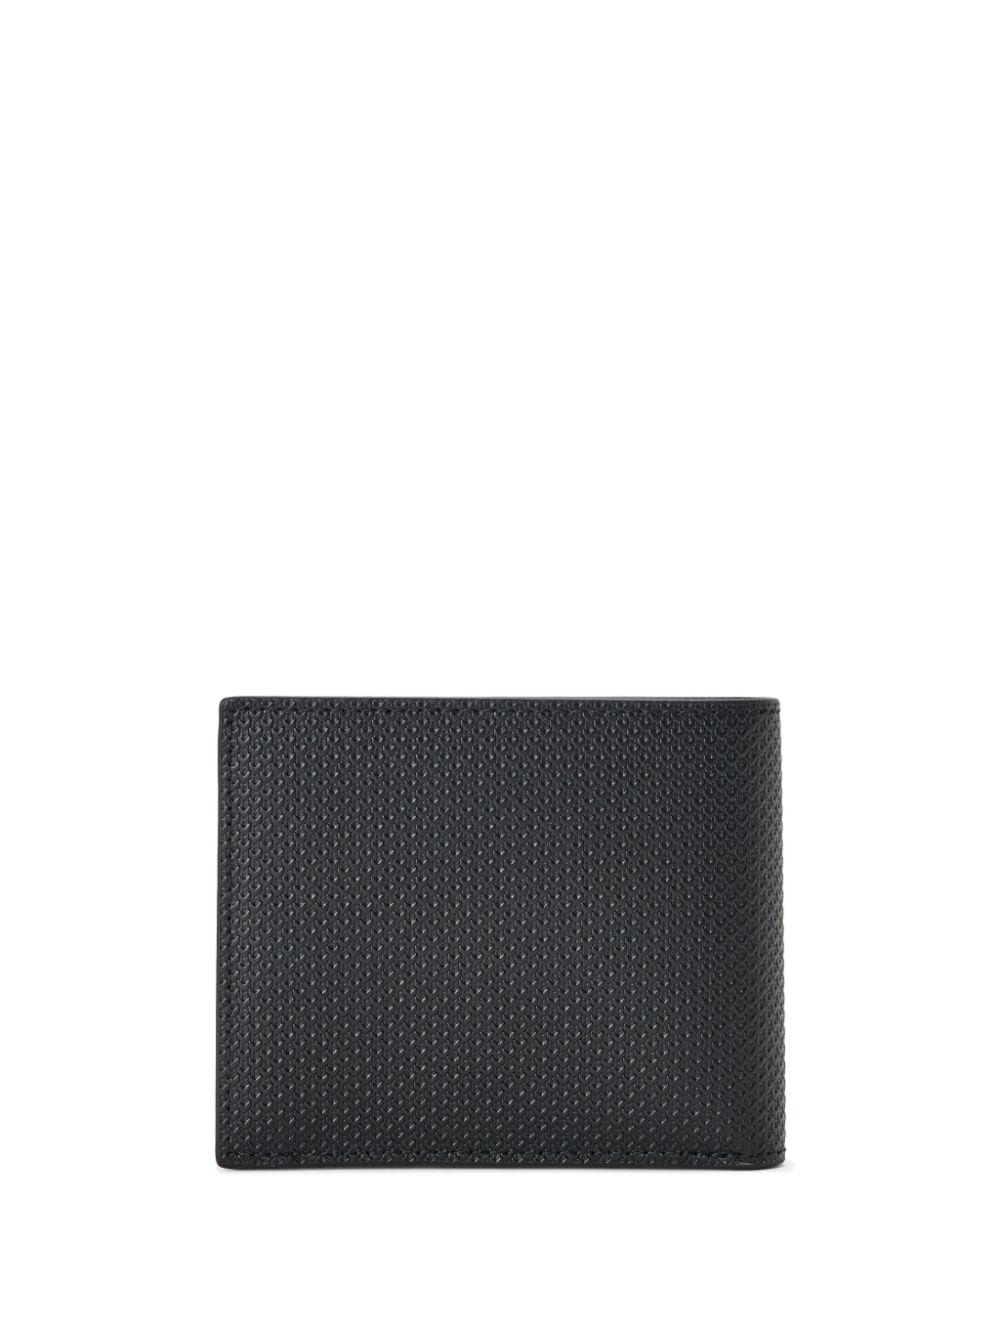 Lacoste Chantaco leather wallet - Zwart